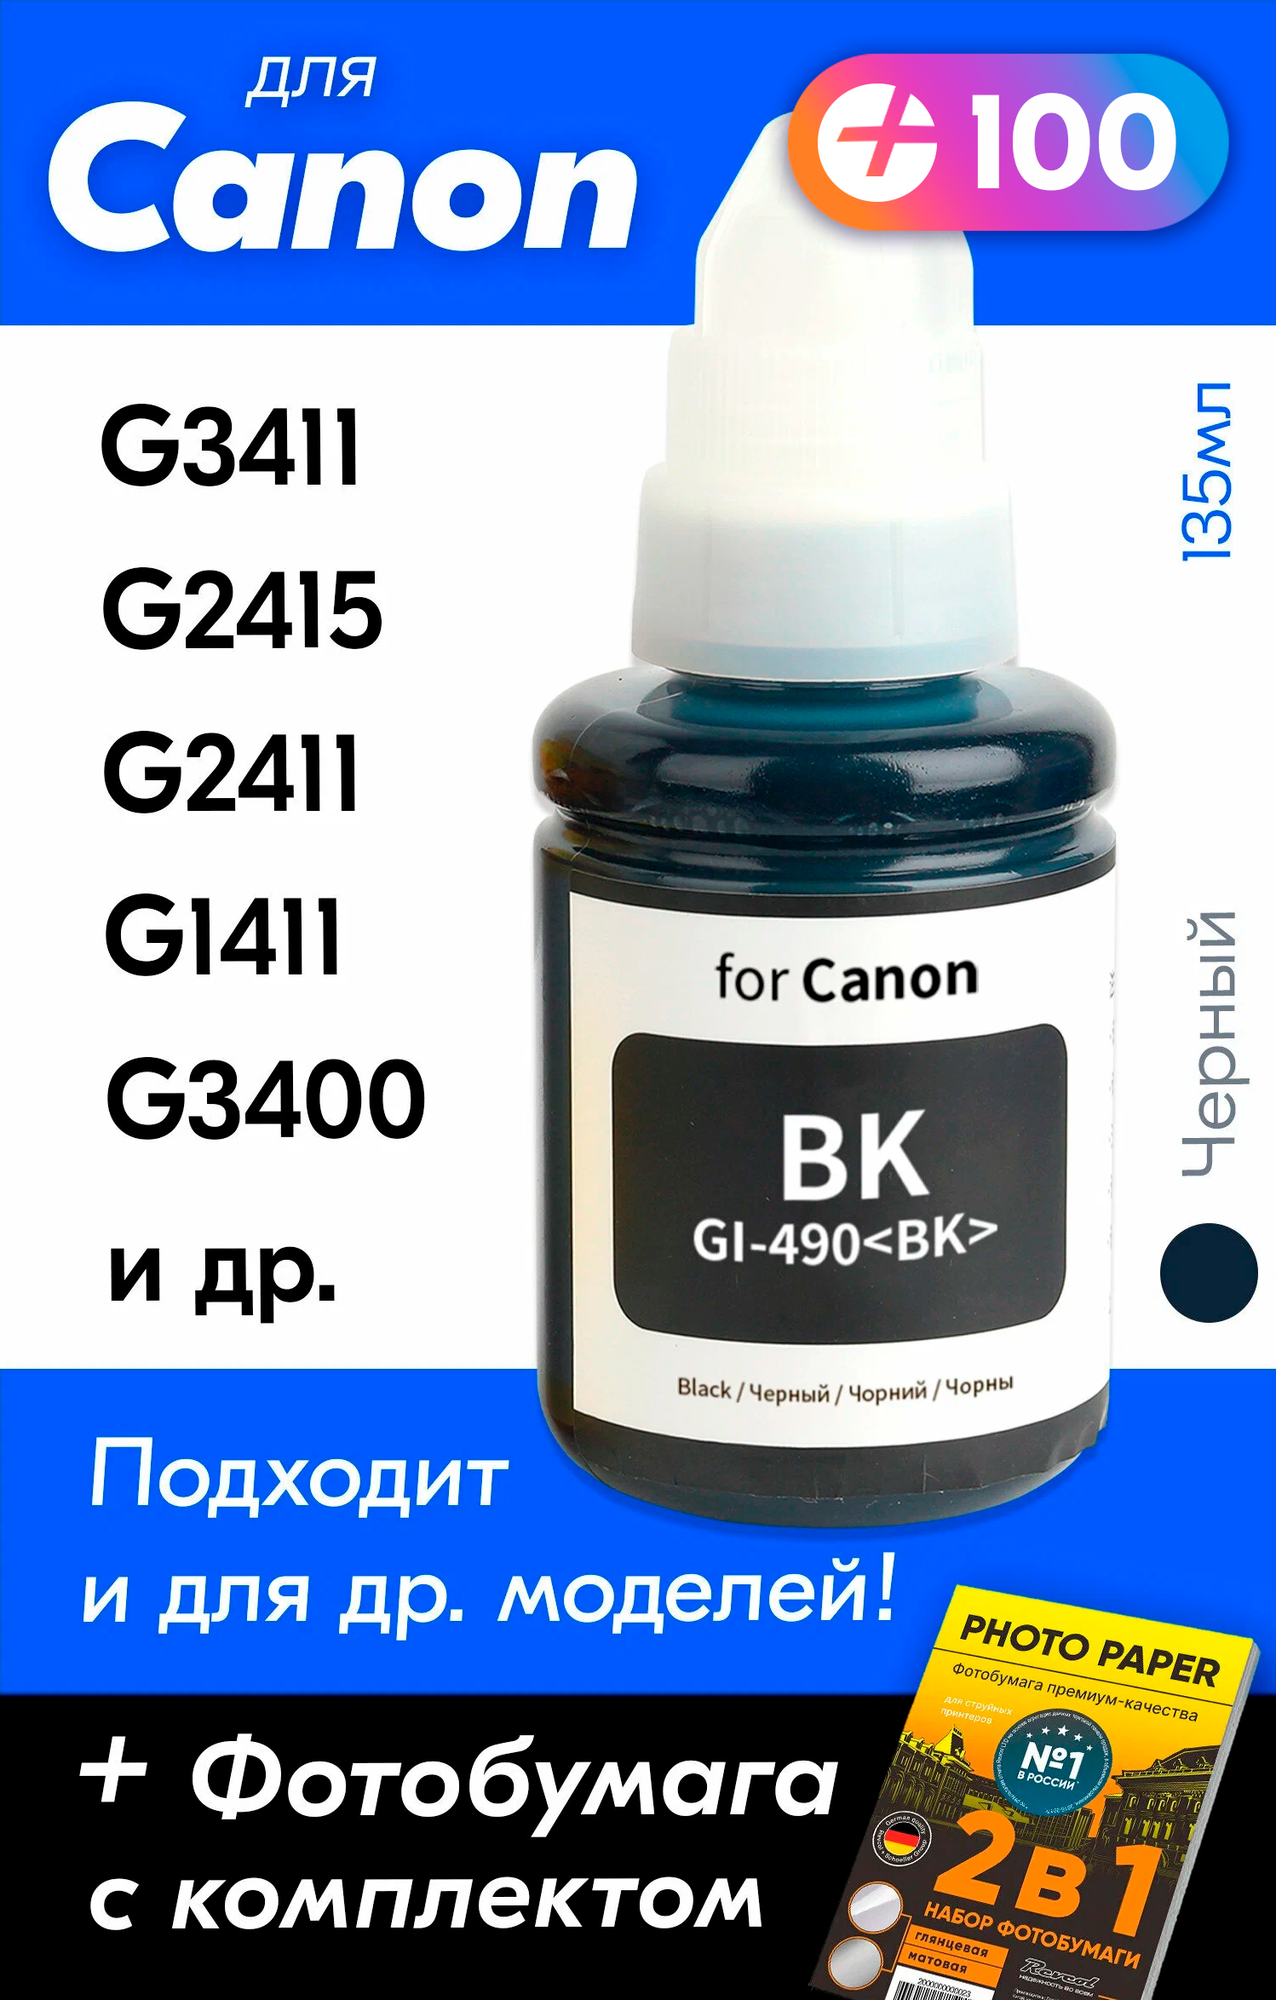 Чернила для принтера Canon Pixma G3411, G2415, G2411, G1411, G3400 и др. Краска для заправки GI-490 на струйный принтер, (Черный) Black